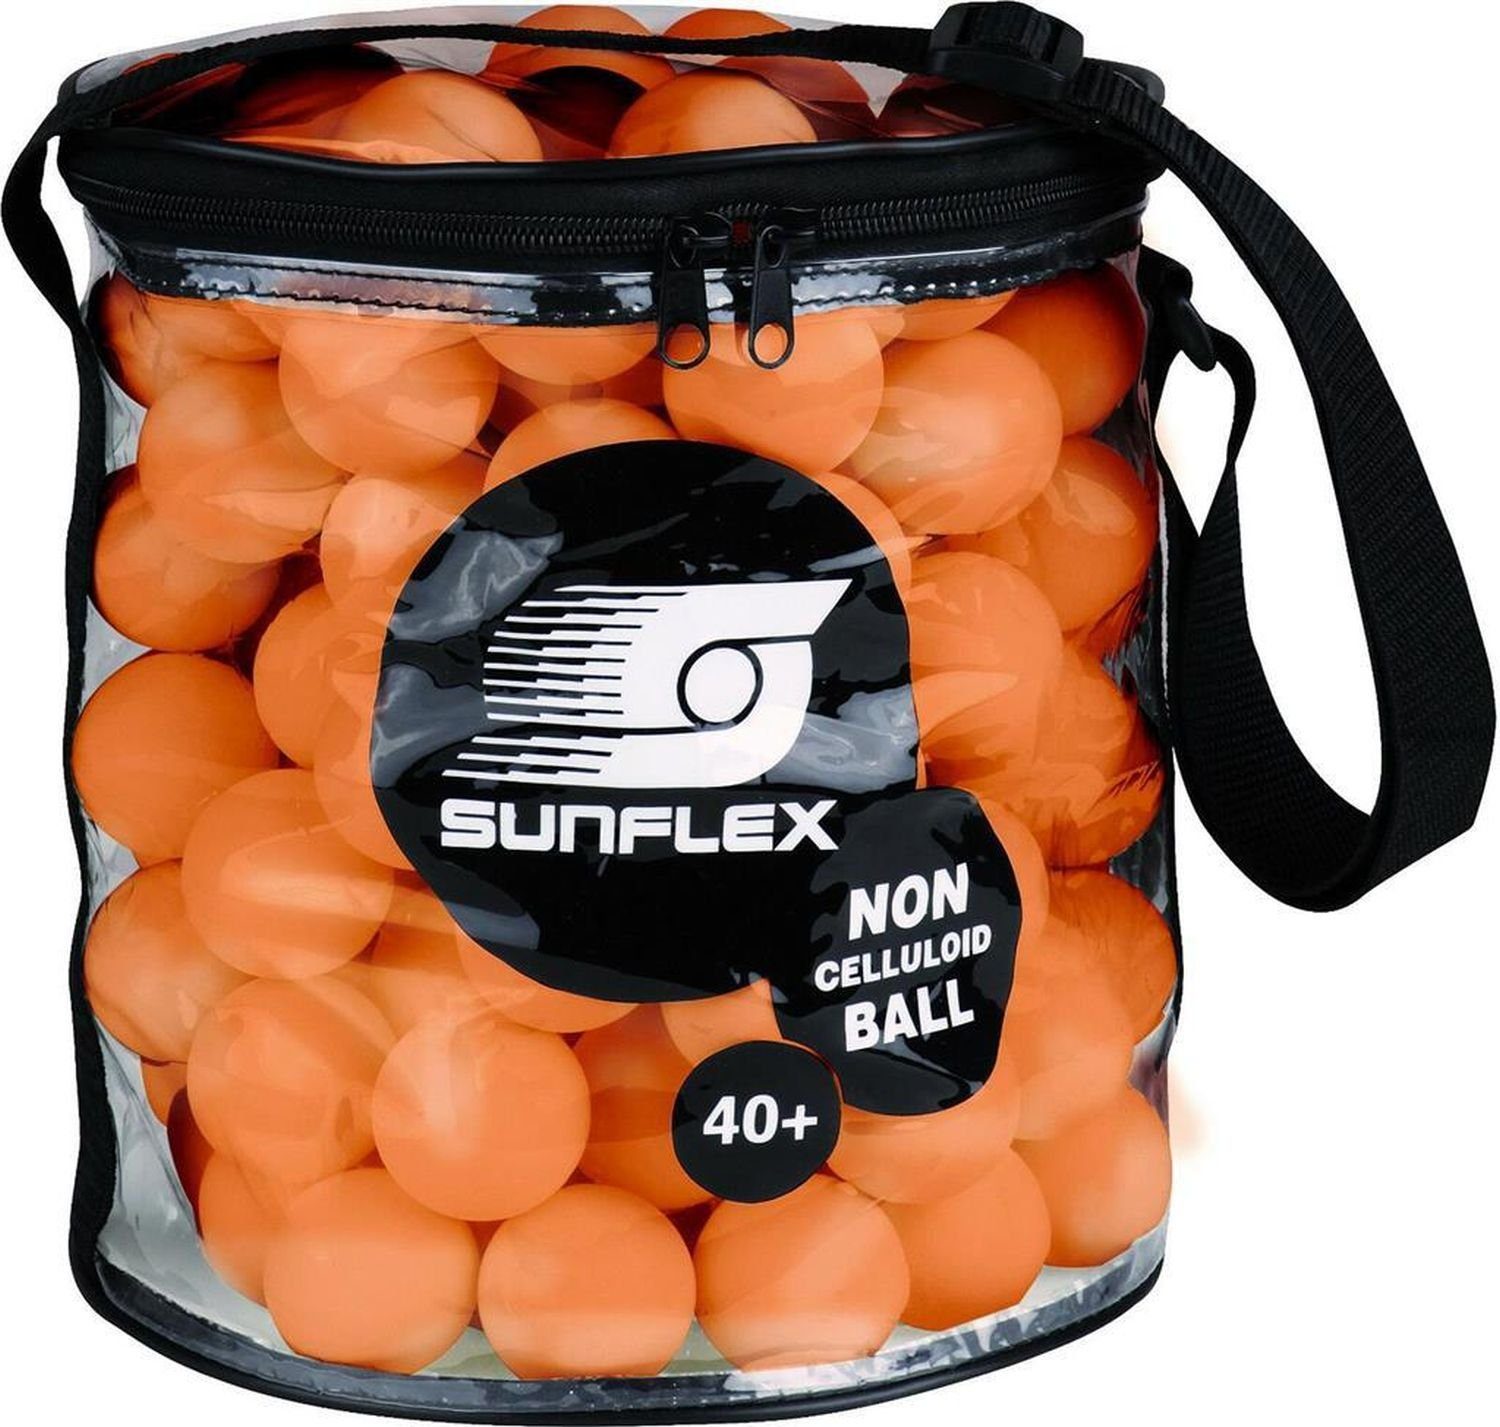 Sunflex Tischtennisball Balltasche inkl. 144 Tischtennisbälle 40+ orange, Tischtennis Bälle Tischtennisball Ball Balls | Sportbälle